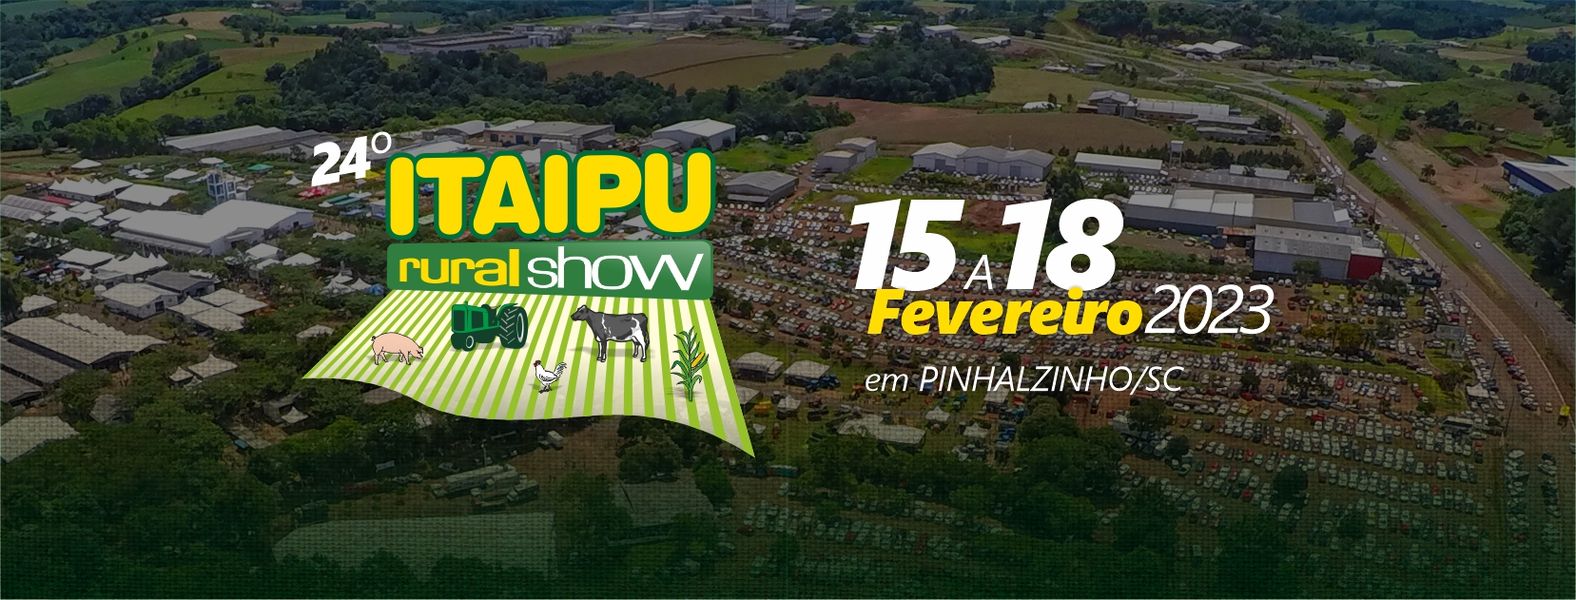 Itaipu Rural Show 2023 (imagem: Divulgação)